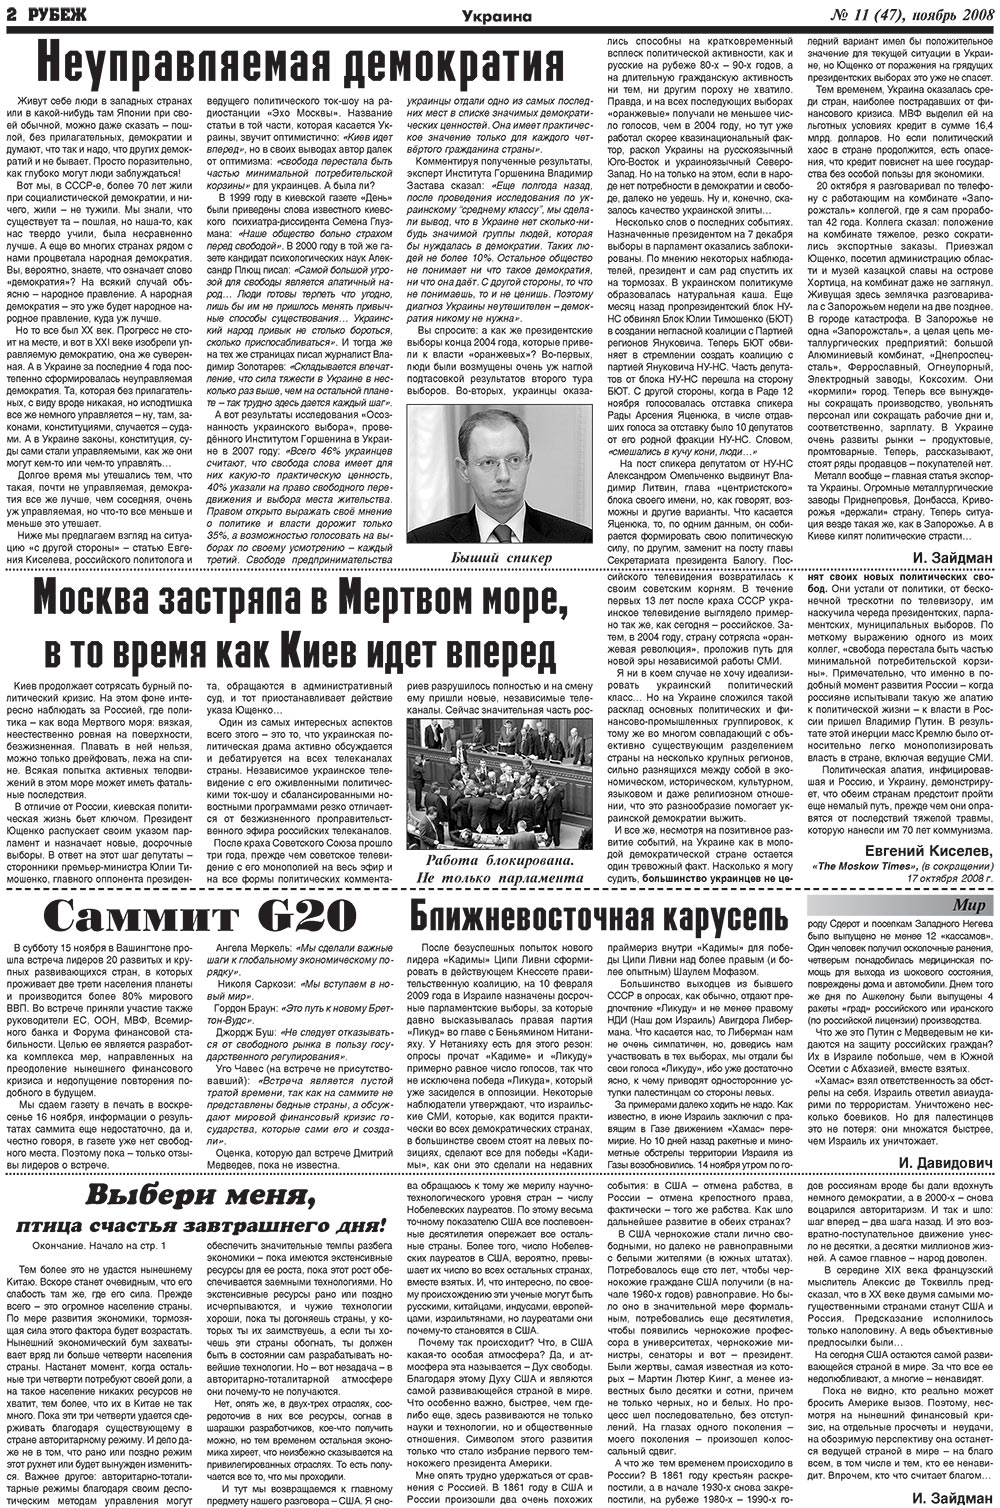 Рубеж (газета). 2008 год, номер 11, стр. 2